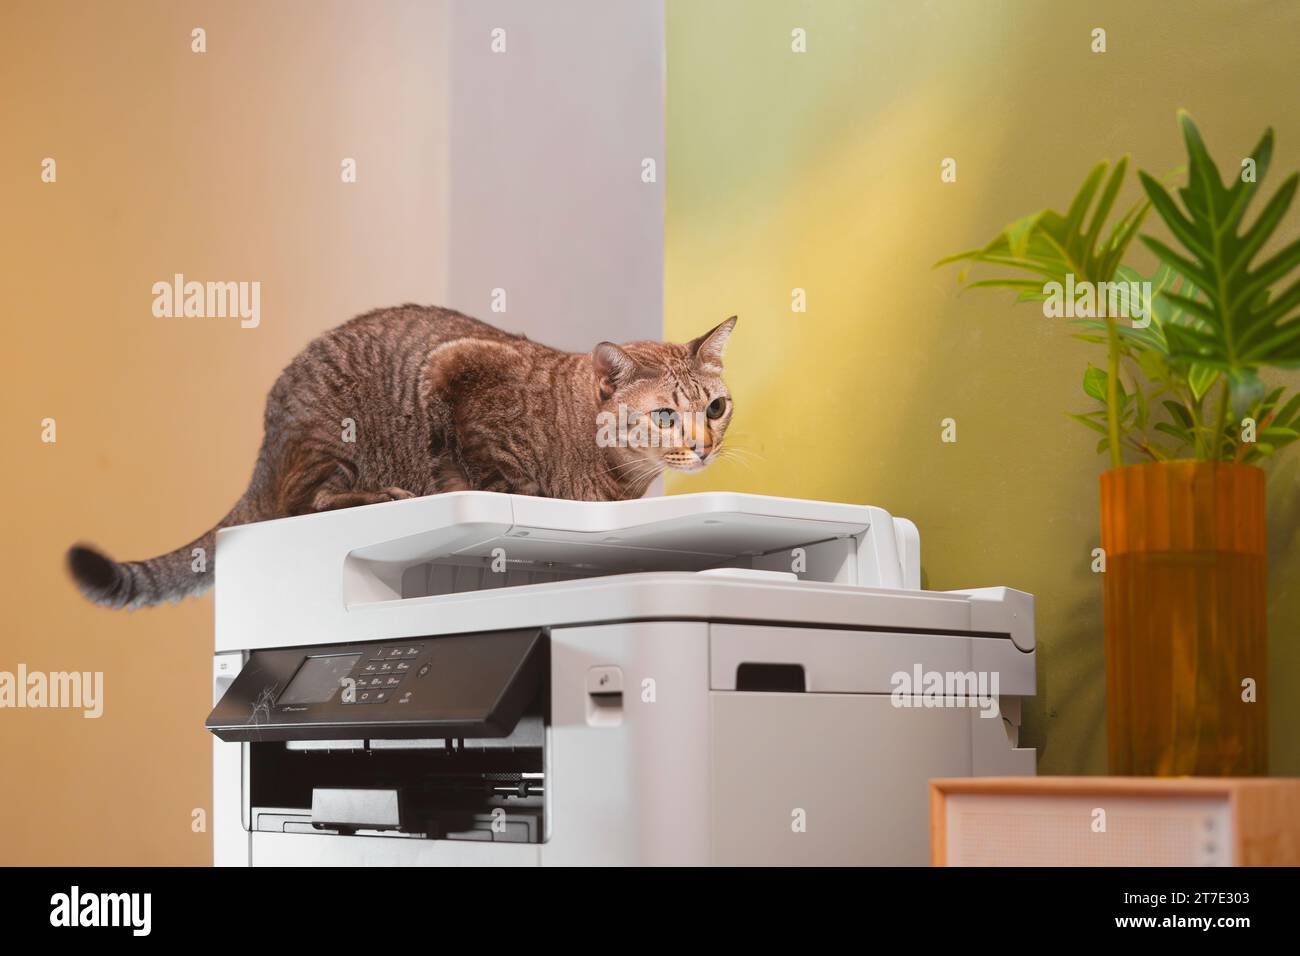 Tabby-Katzen liegen auf einem Multifunktions-Laserdrucker in Home-Office-Dokumenten oder Papieren. Drucktechnologie. Fotokopie. Stockfoto